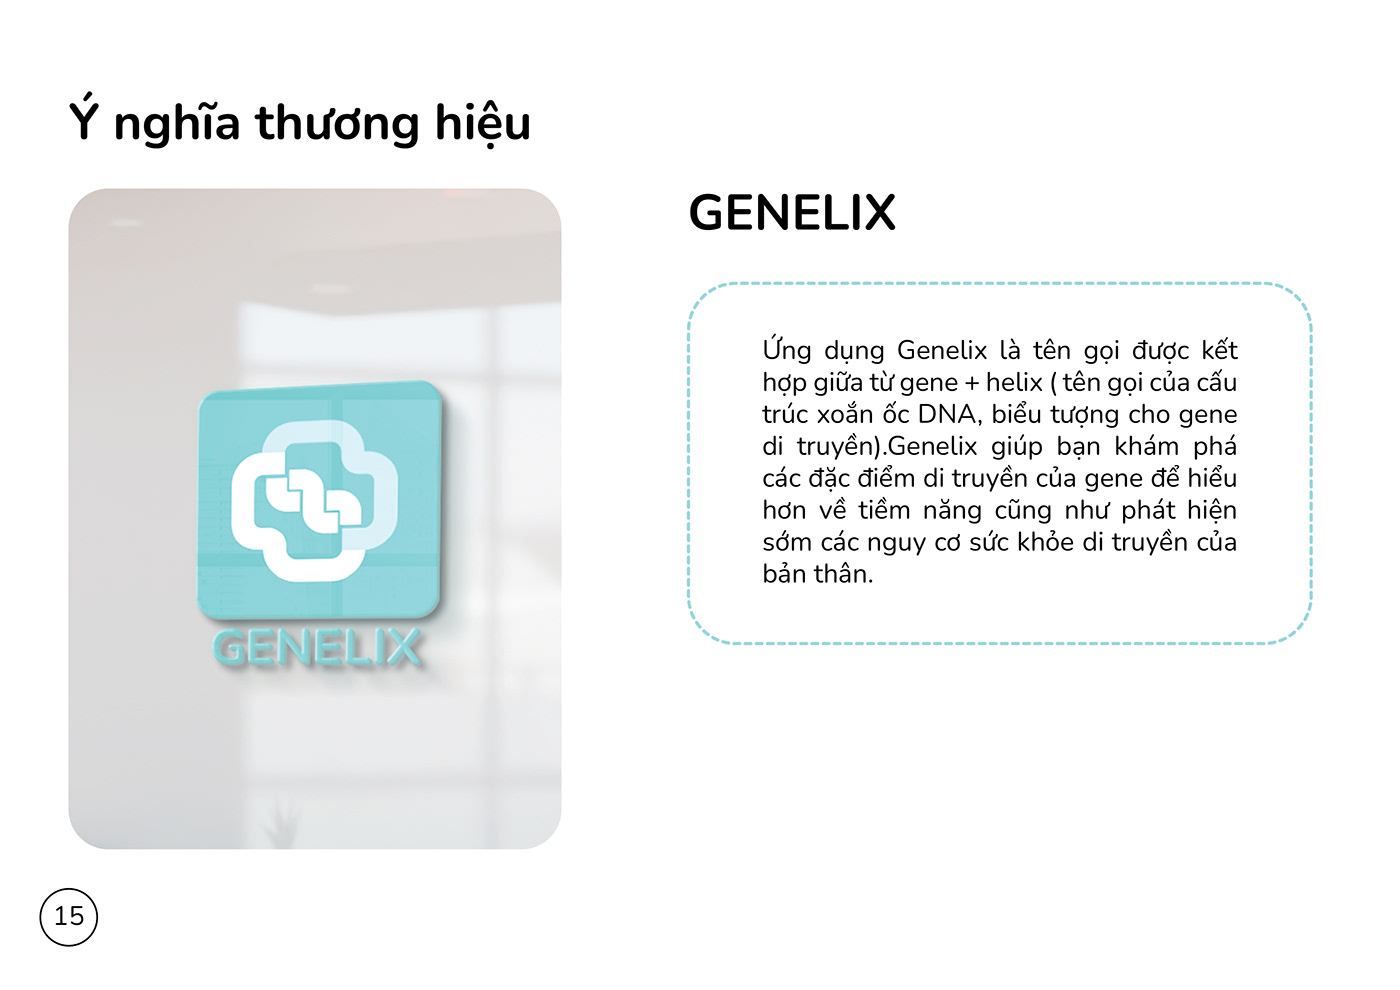 UI/UX design mobile app design UX Case Study Mobile app ui design UX design Figma healthy doctor